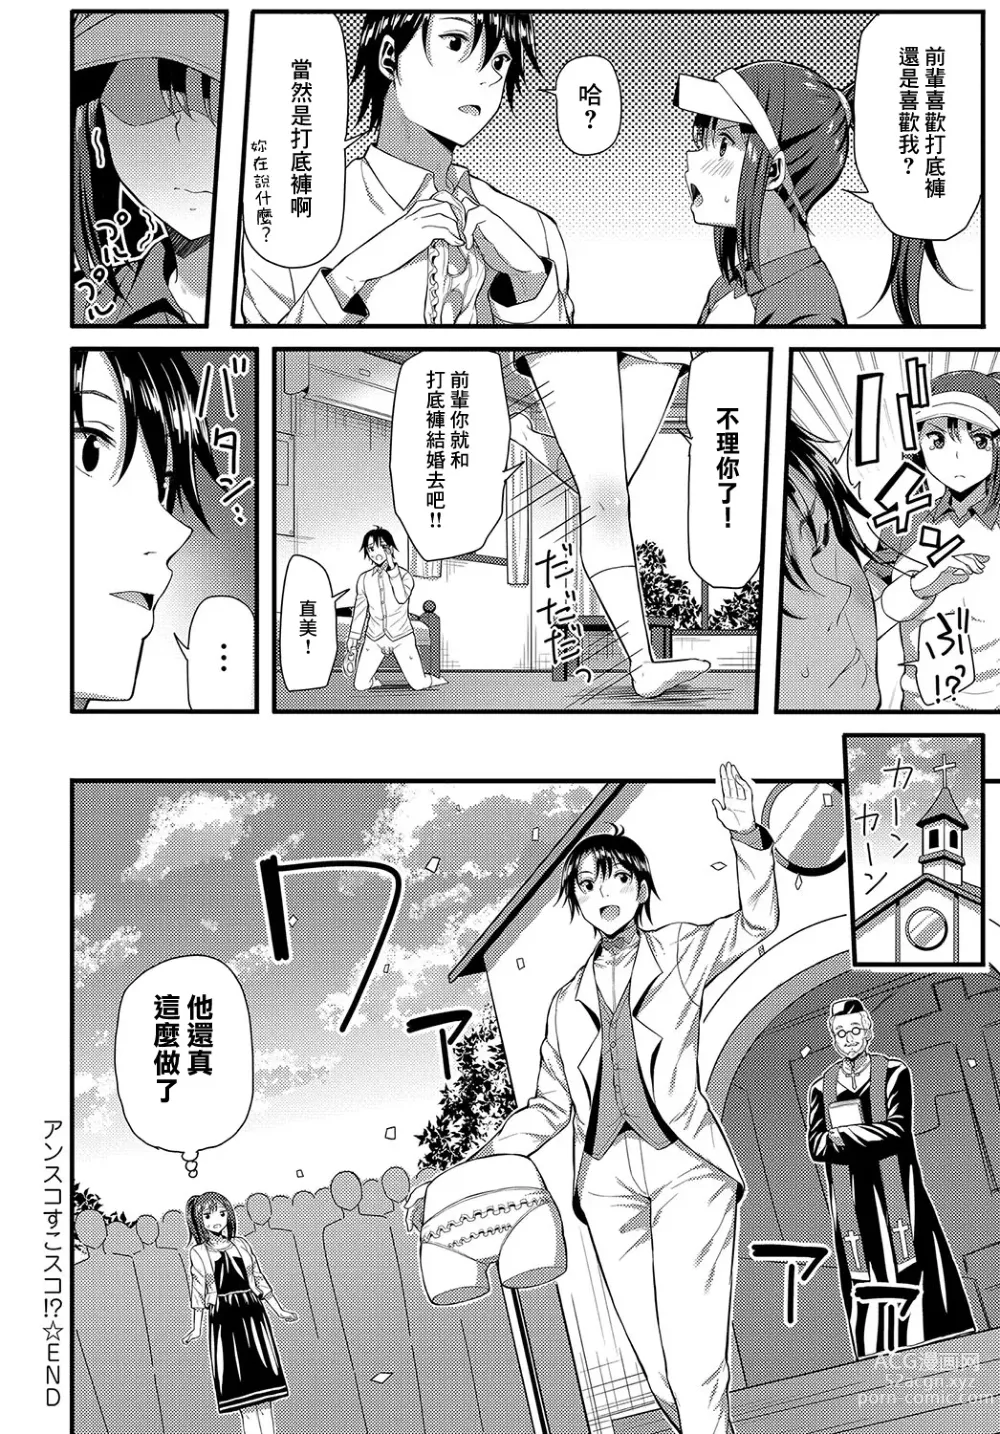 Page 18 of manga UnSkor Suko Suko!?